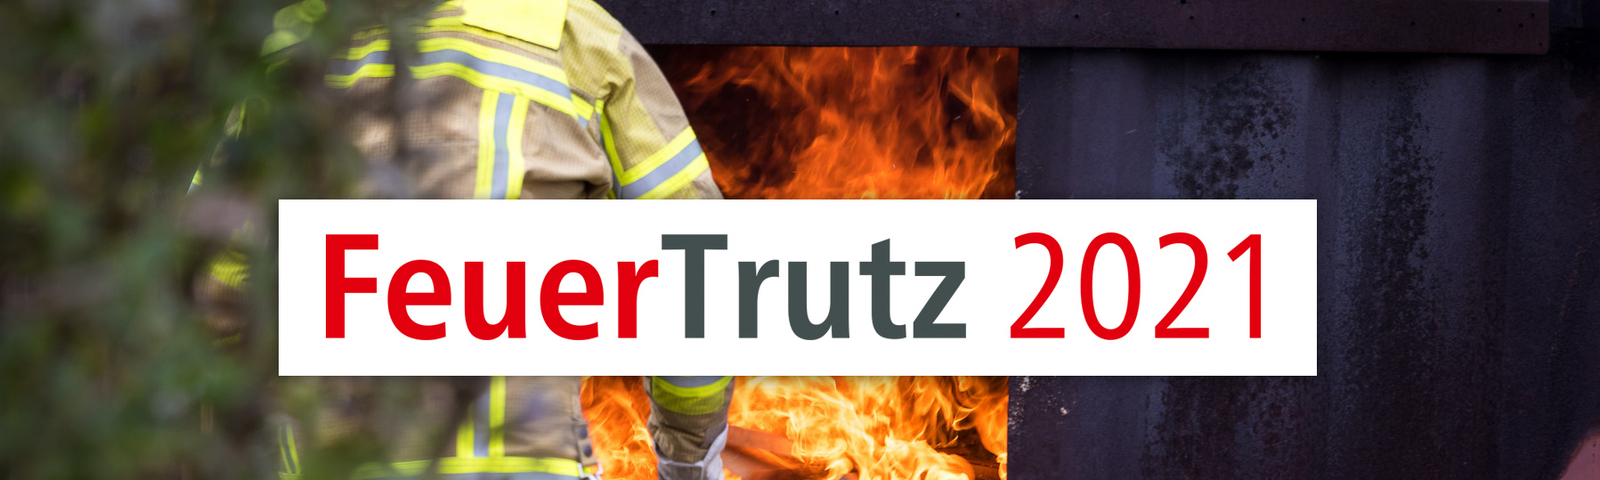 FeuerTrutz 2021 - Stöbich